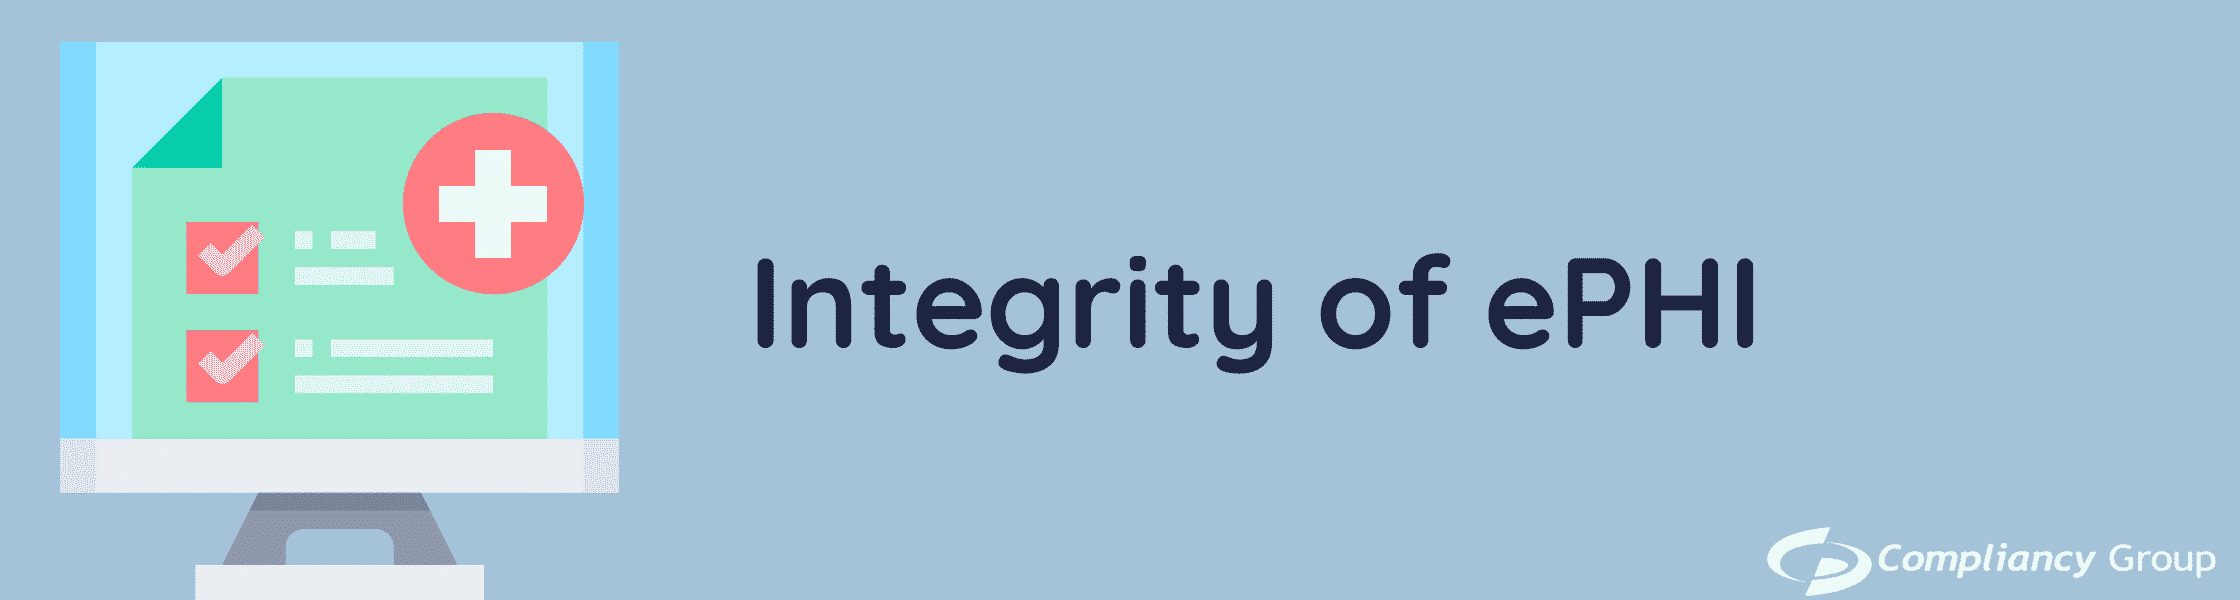 Integrity of ePHI